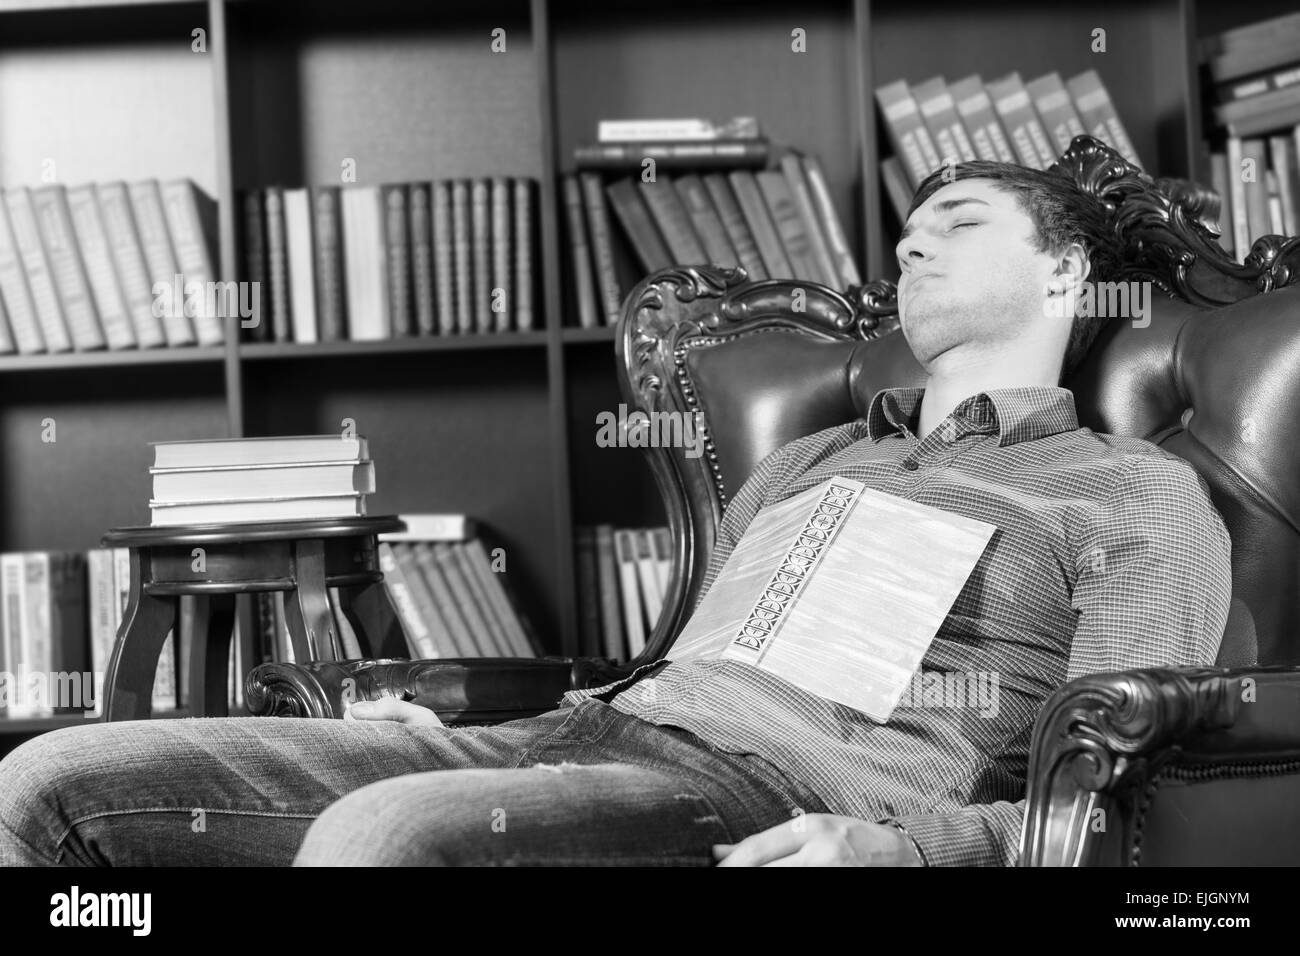 Schließen Sie sich müde junge Mann aus Lesung Literatur ruht auf den Stuhl in der Nähe von the Bücherregalen mit Buch liegend auf seiner Brust, Captured in Monochrom... Stockfoto